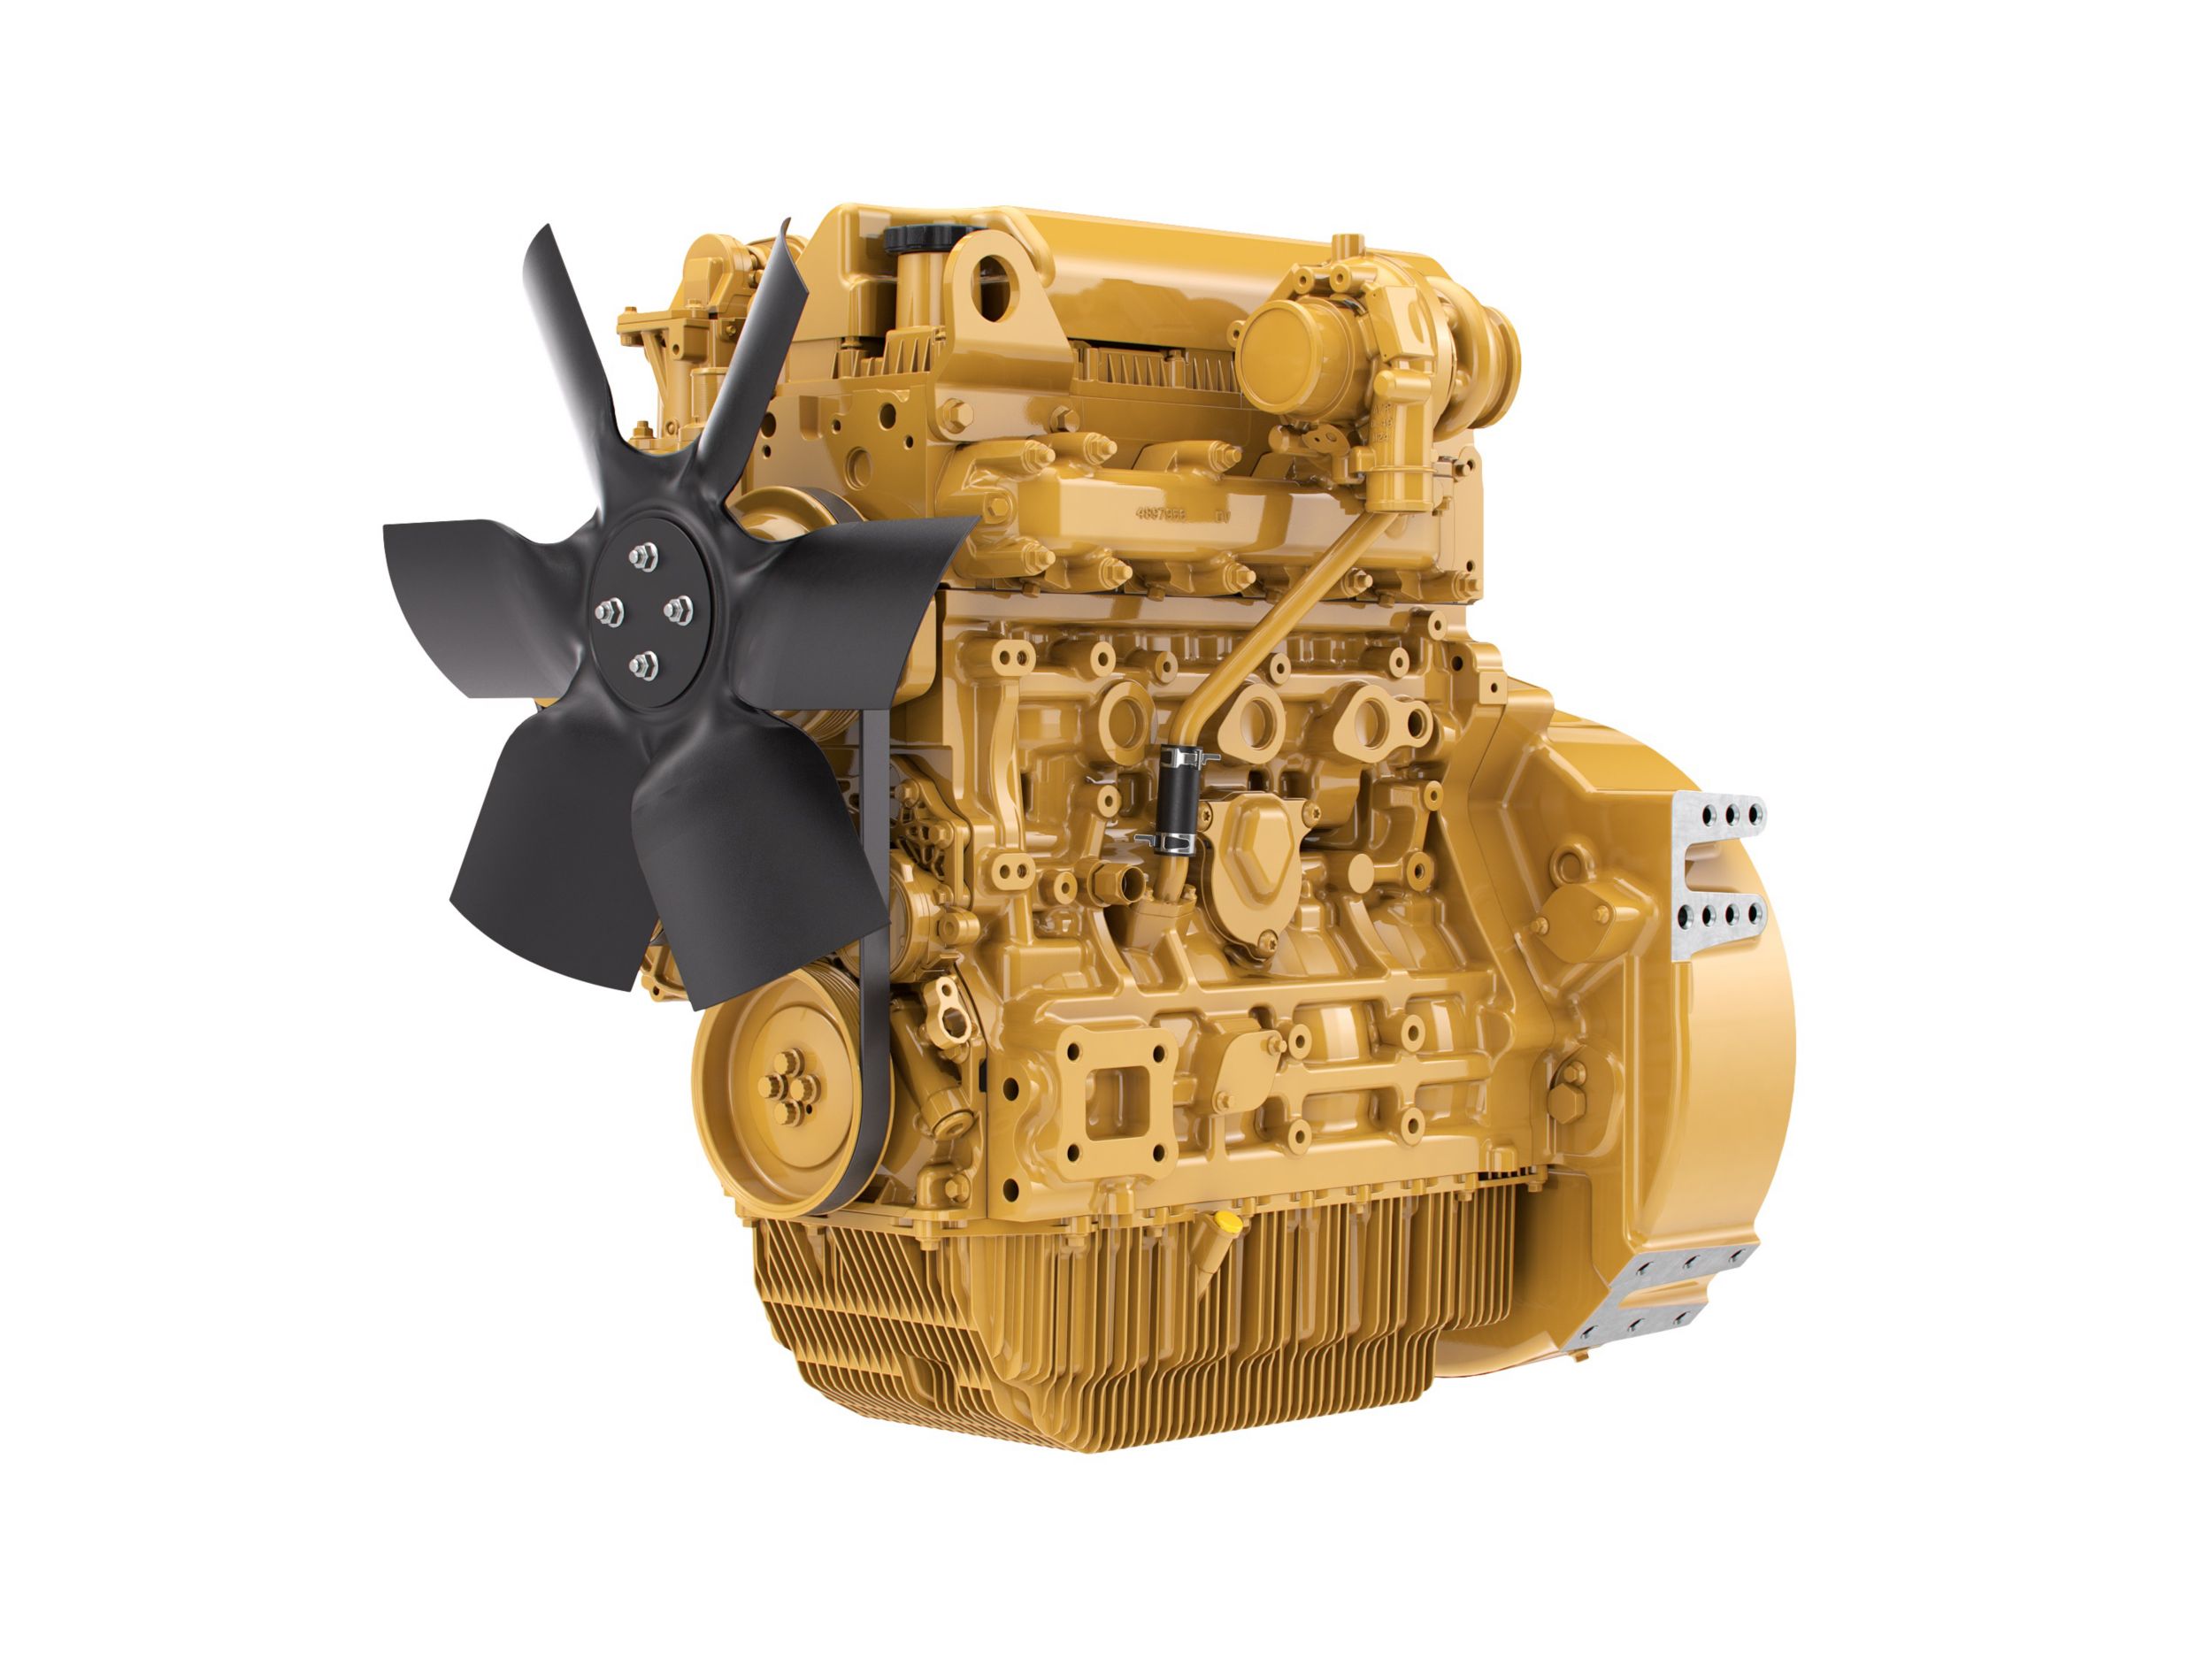 Motores Diesel C3.6 LRC - Menos Regulamentados e Não Regulamentados